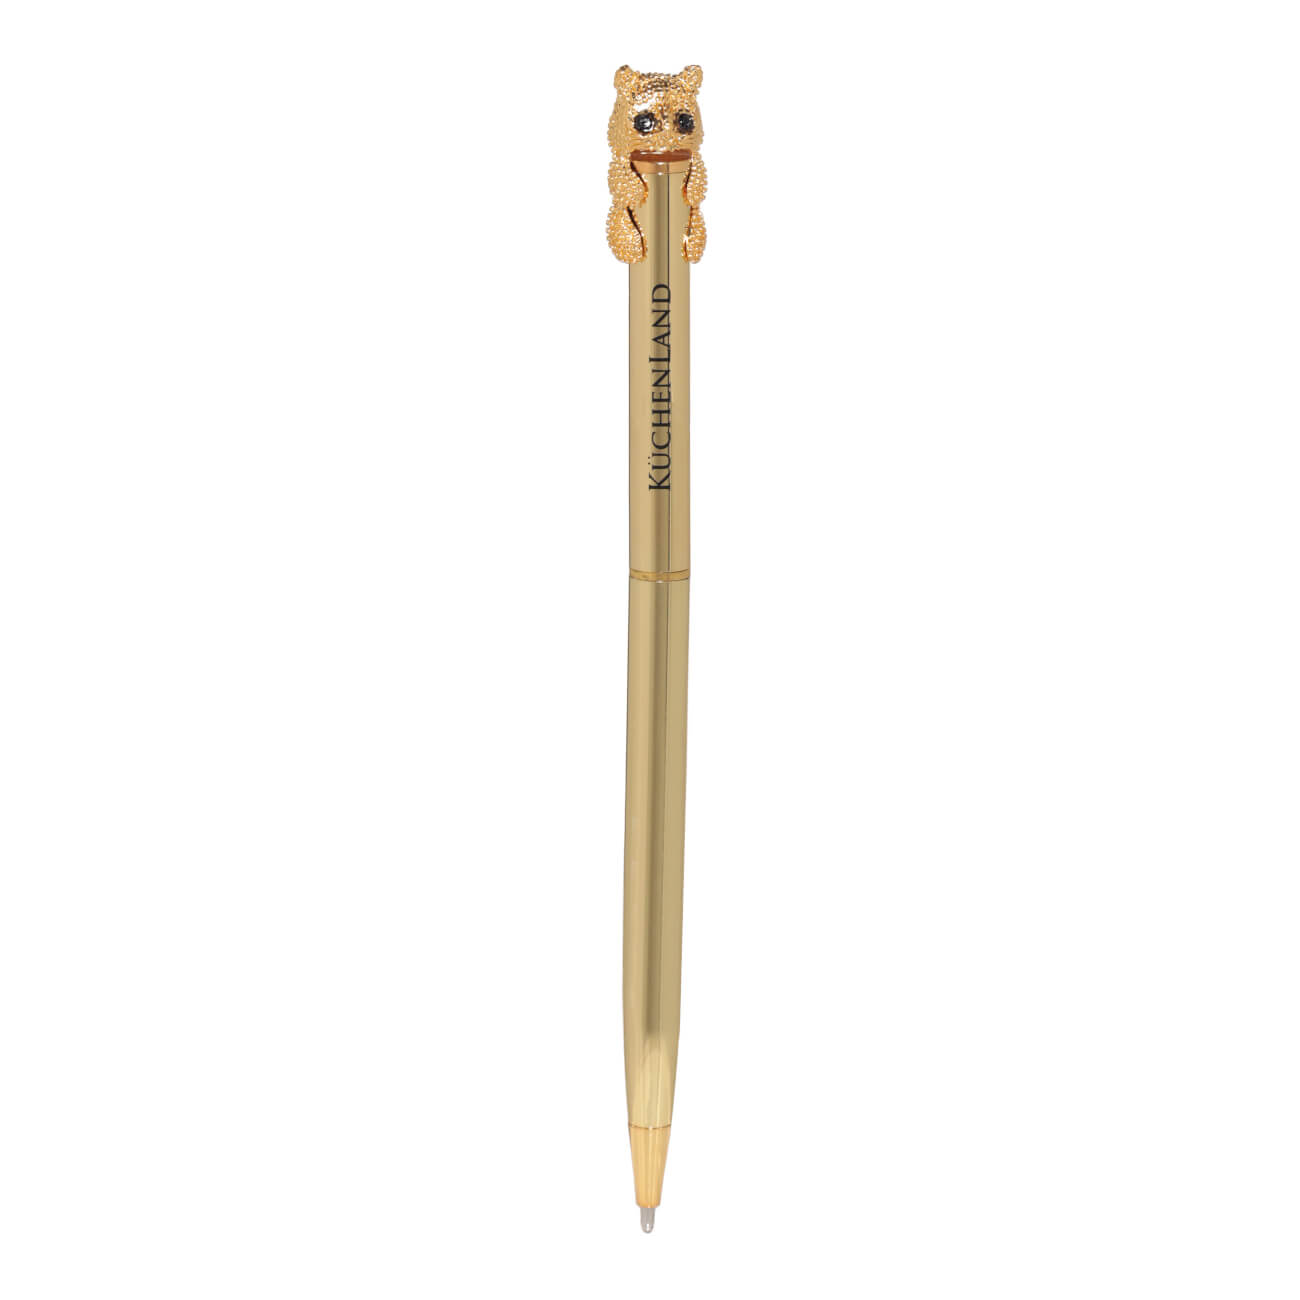 Ручка шариковая, 14 см, с фигуркой, золотистая, Кот, Draw figure карандаш 18 см чернографитный с фигуркой сова draw figure